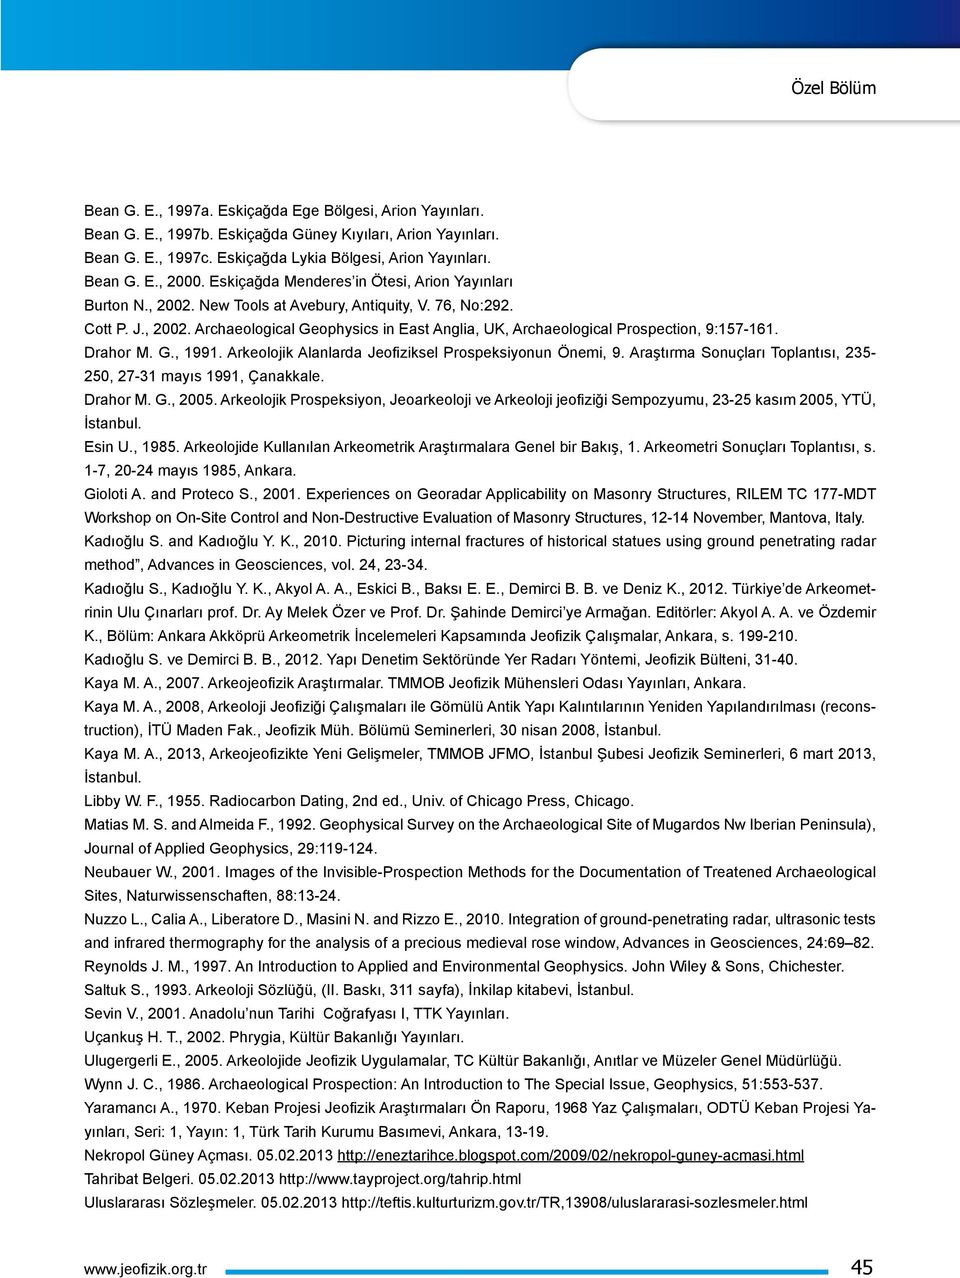 Drahor M. G., 1991. Arkeolojik Alanlarda Jeofiziksel Prospeksiyonun Önemi, 9. Araştırma Sonuçları Toplantısı, 235-250, 27-31 mayıs 1991, Çanakkale. Drahor M. G., 2005.